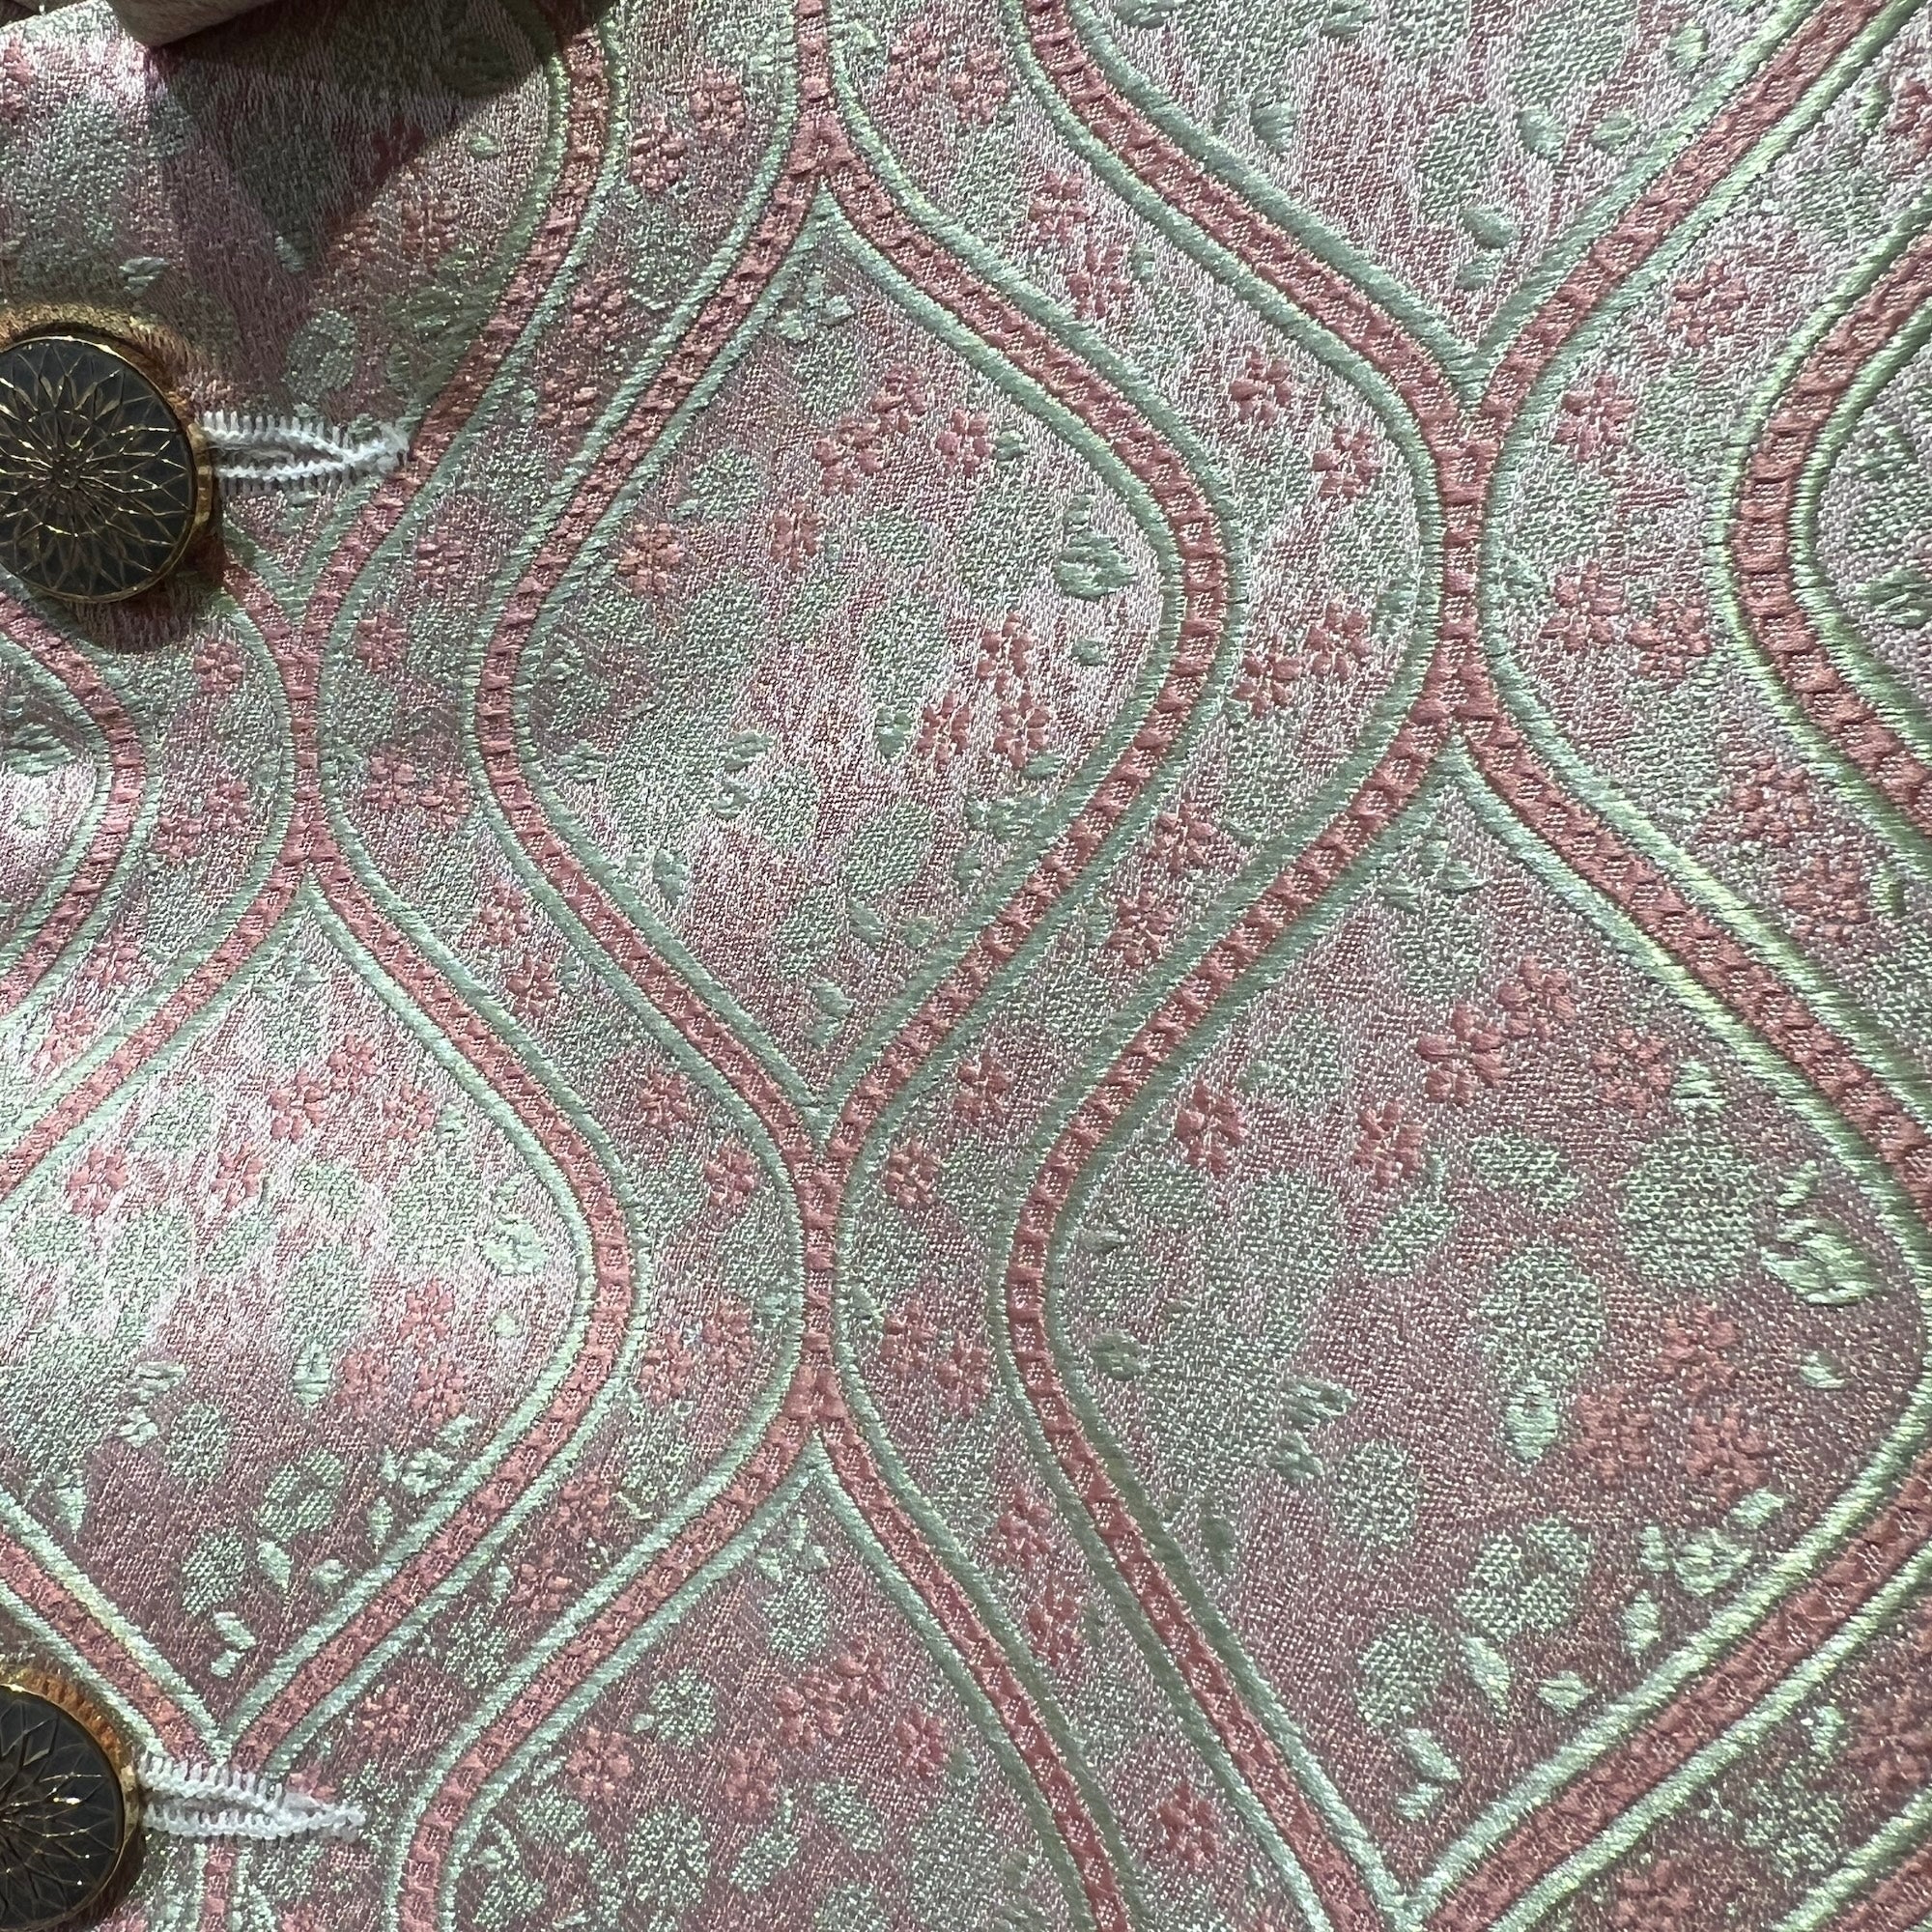 Pink & Mint OG Jodhpuri Jacket - Vintage India NYC